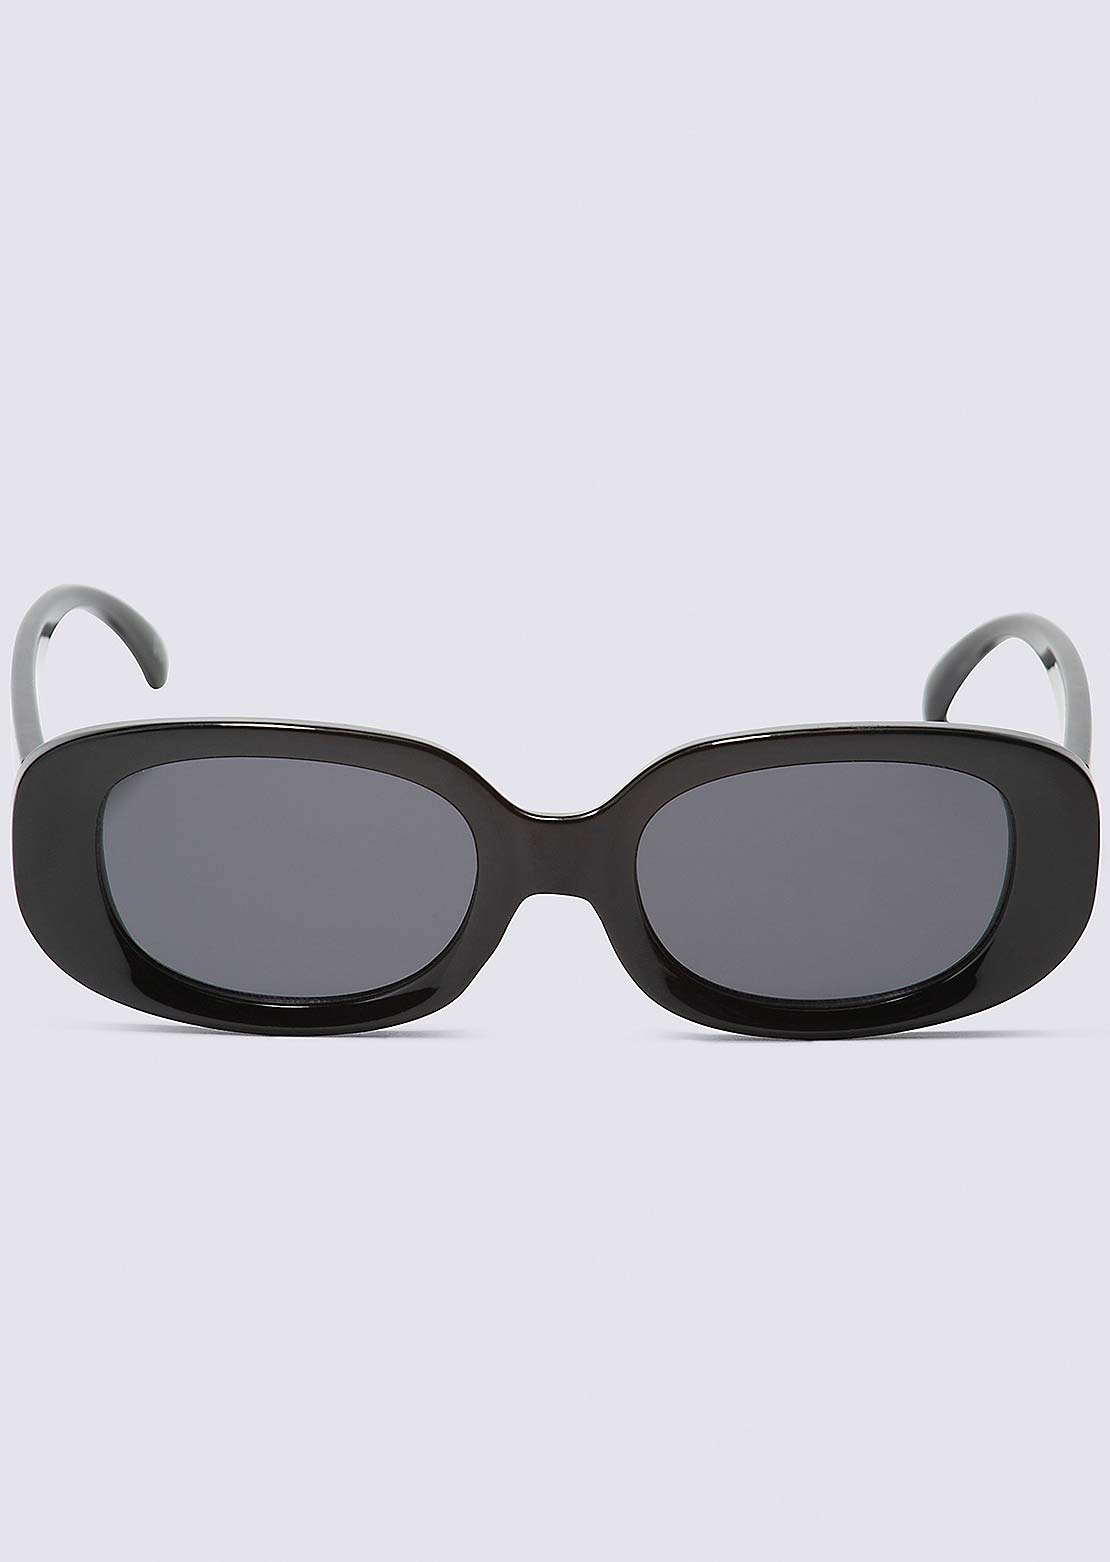 Vans Women&#39;s Showstopper Sunglasses Black